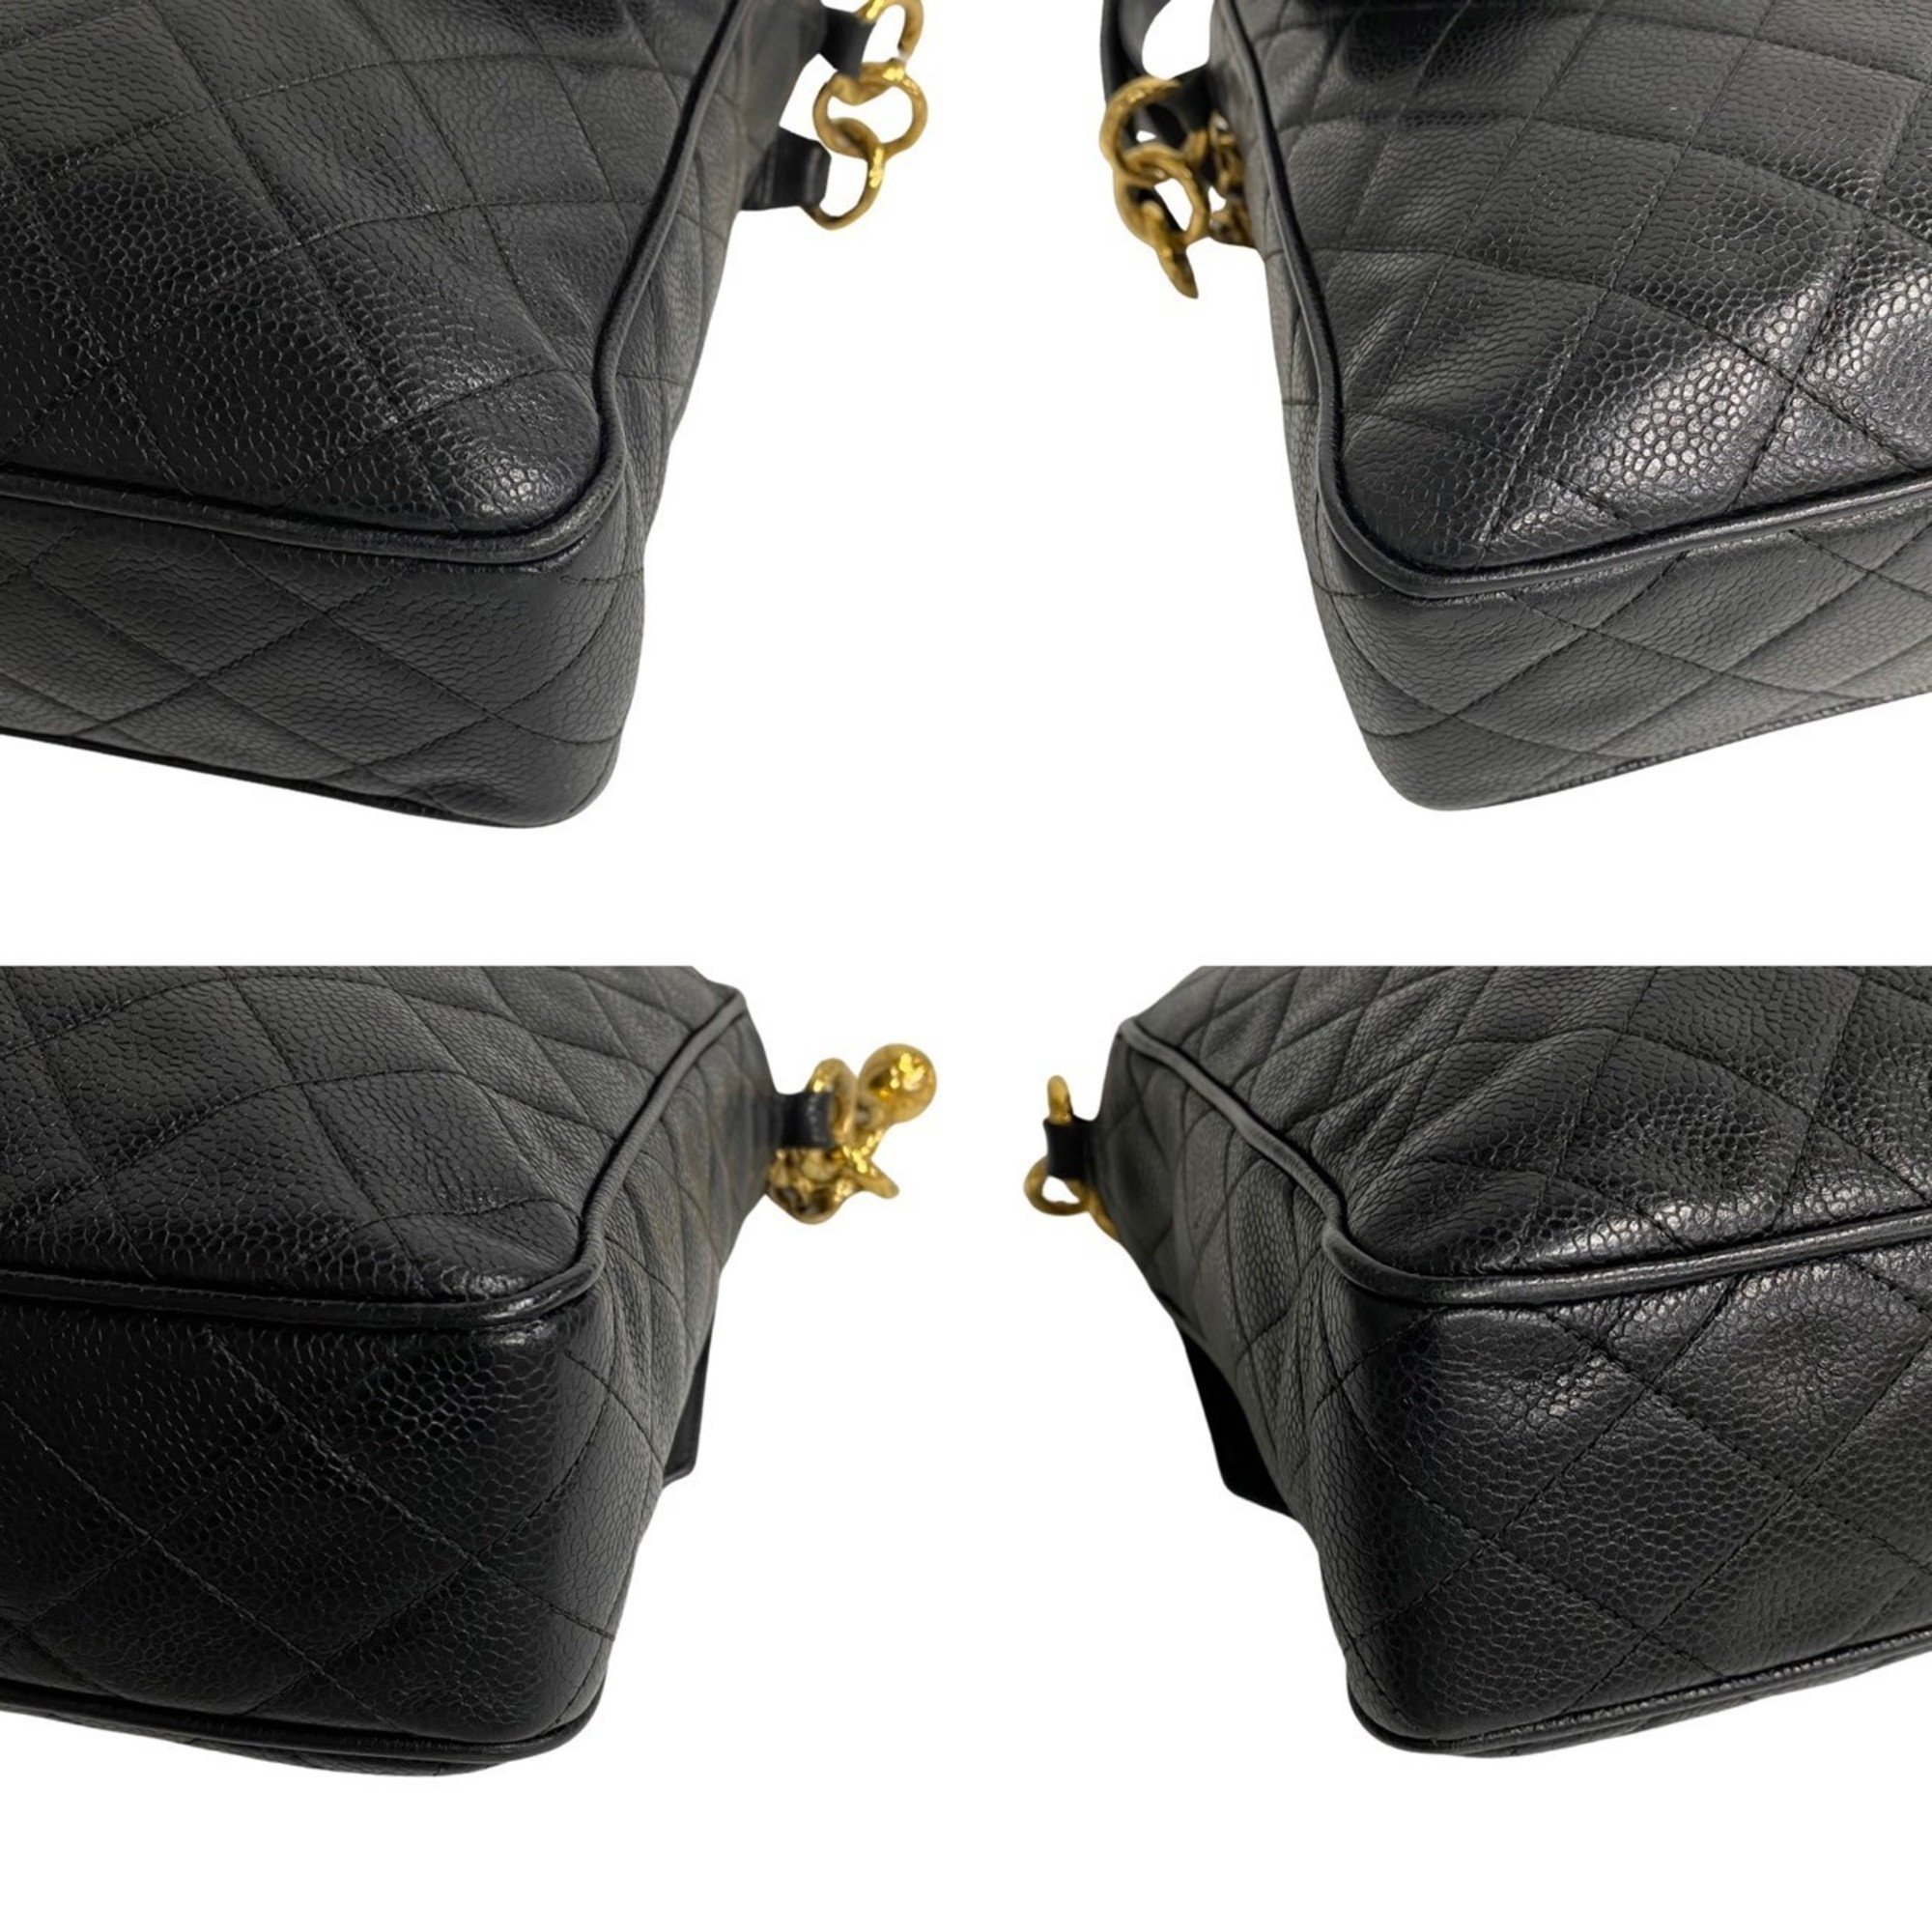 CHANEL Caviar Skin Matelasse Leather Shoulder Bag Navy 64336